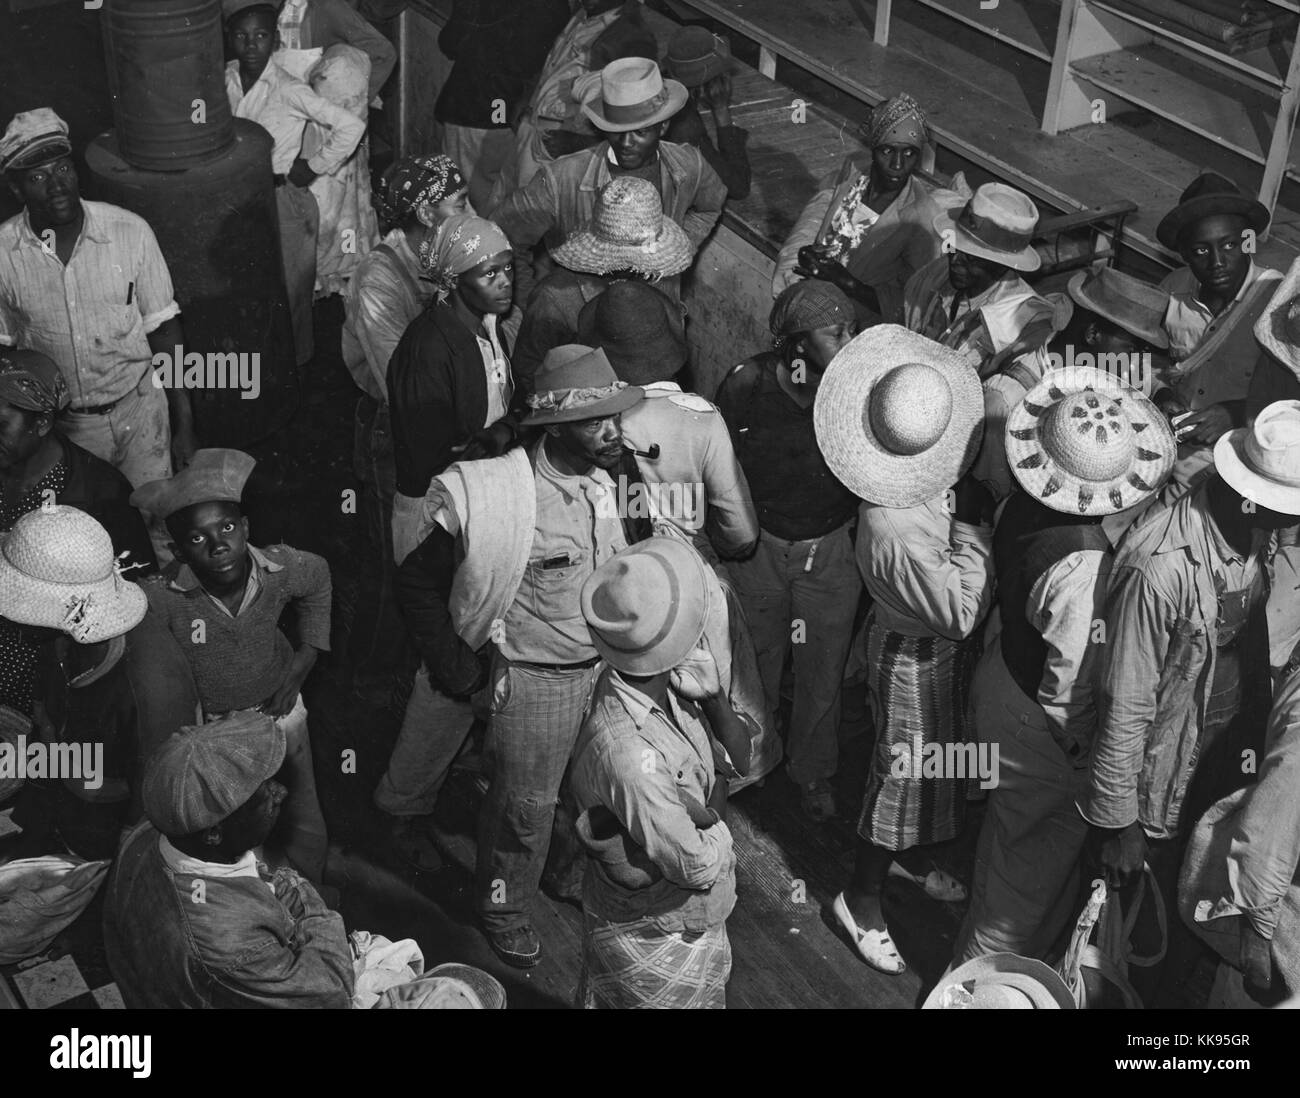 Schwarz-weiß Foto von einer großen Gruppe von afroamerikanischen Tagelöhner von Lkw von nahe gelegenen Städten für Baumwolle pflücken, innen Plantage Store warten, ausgezahlt zu werden und liefert kaufen, Marcella Plantage, Mileston, Mississippi Delta, Mississippi, 1939. Von der New York Public Library. Stockfoto